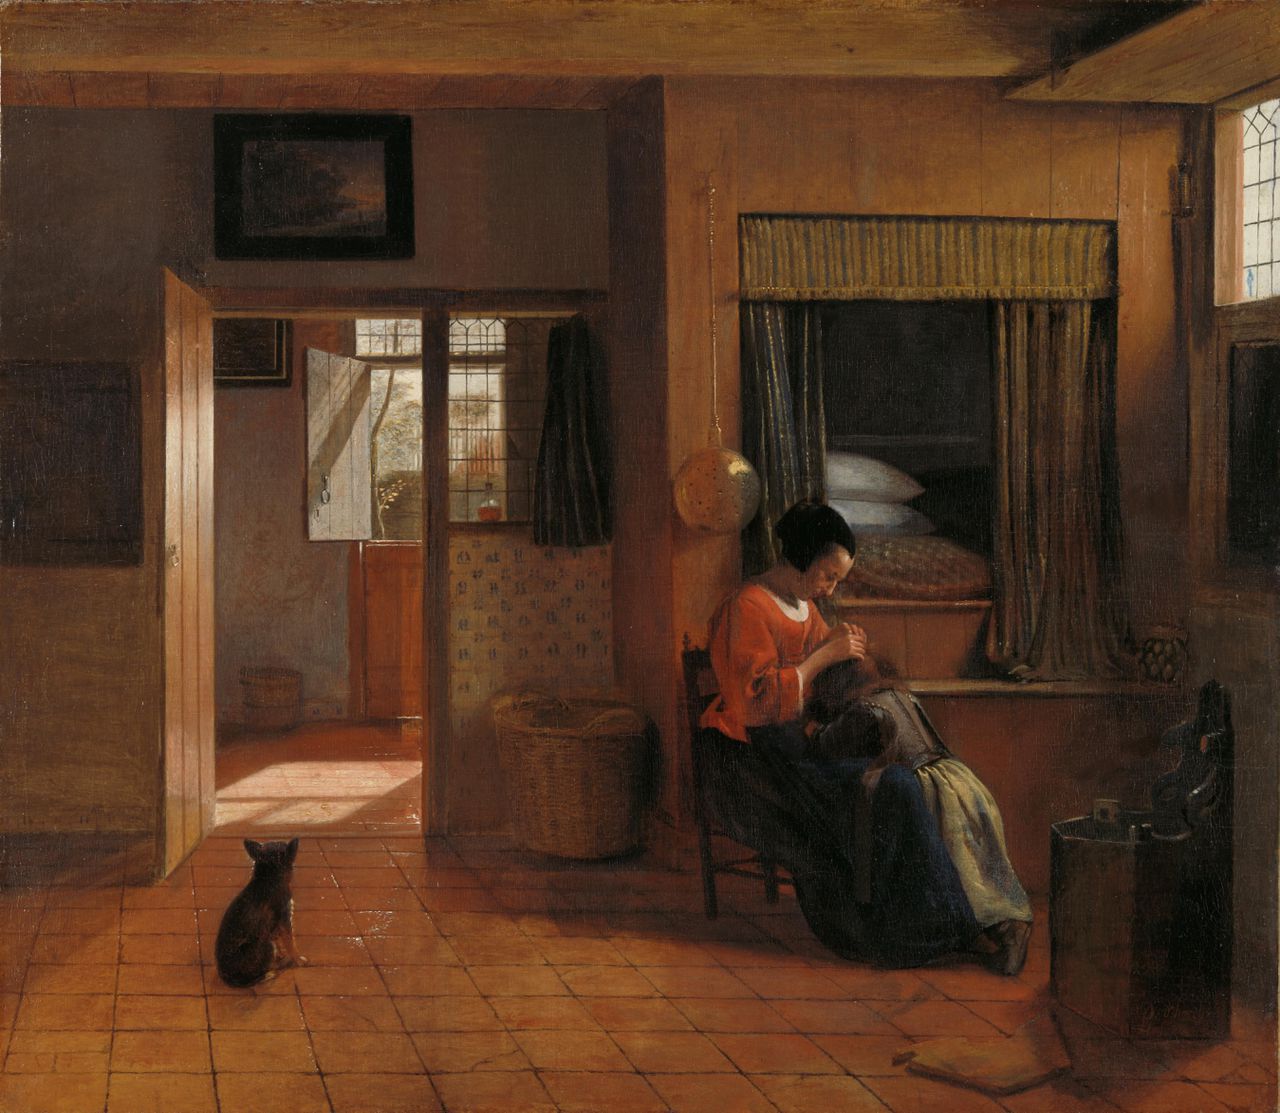 Pieter de Hooch, Binnenkamer met een moeder die het haar van haar kind reinigt, circa 1658-1660